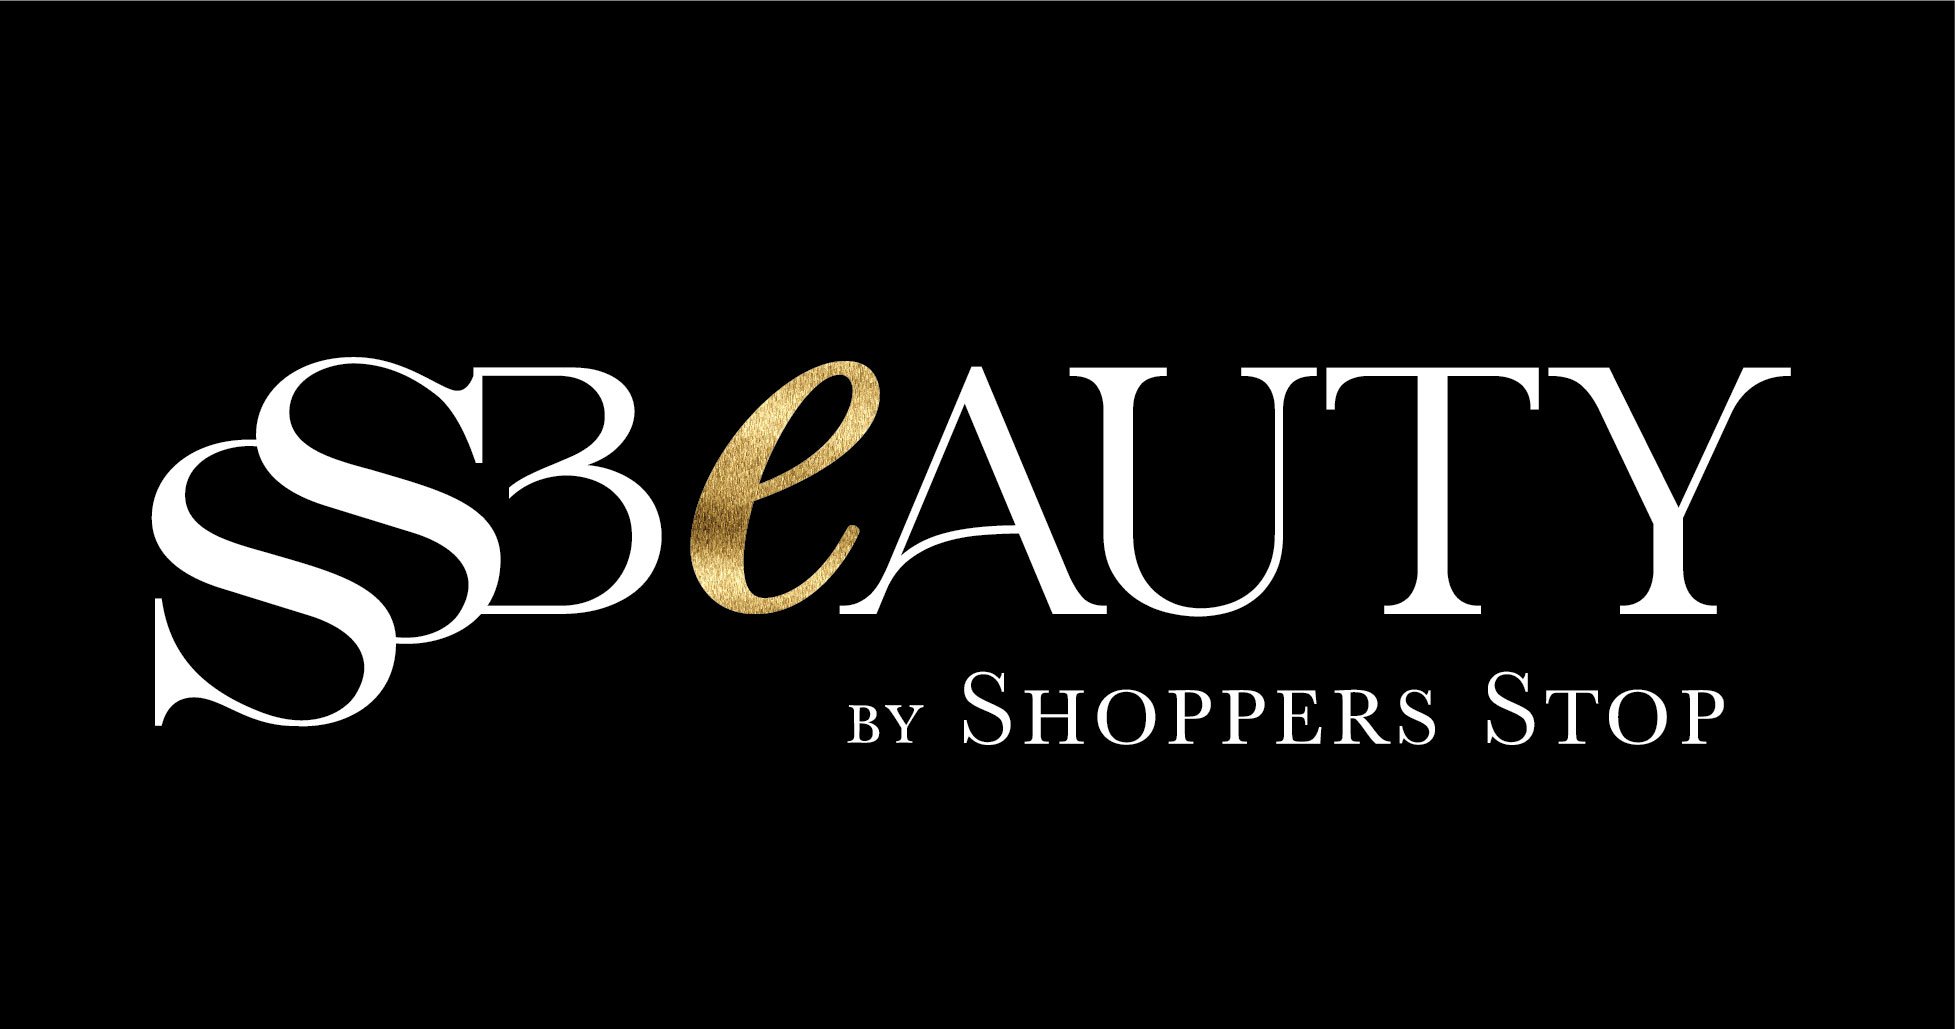 ss beauty logo